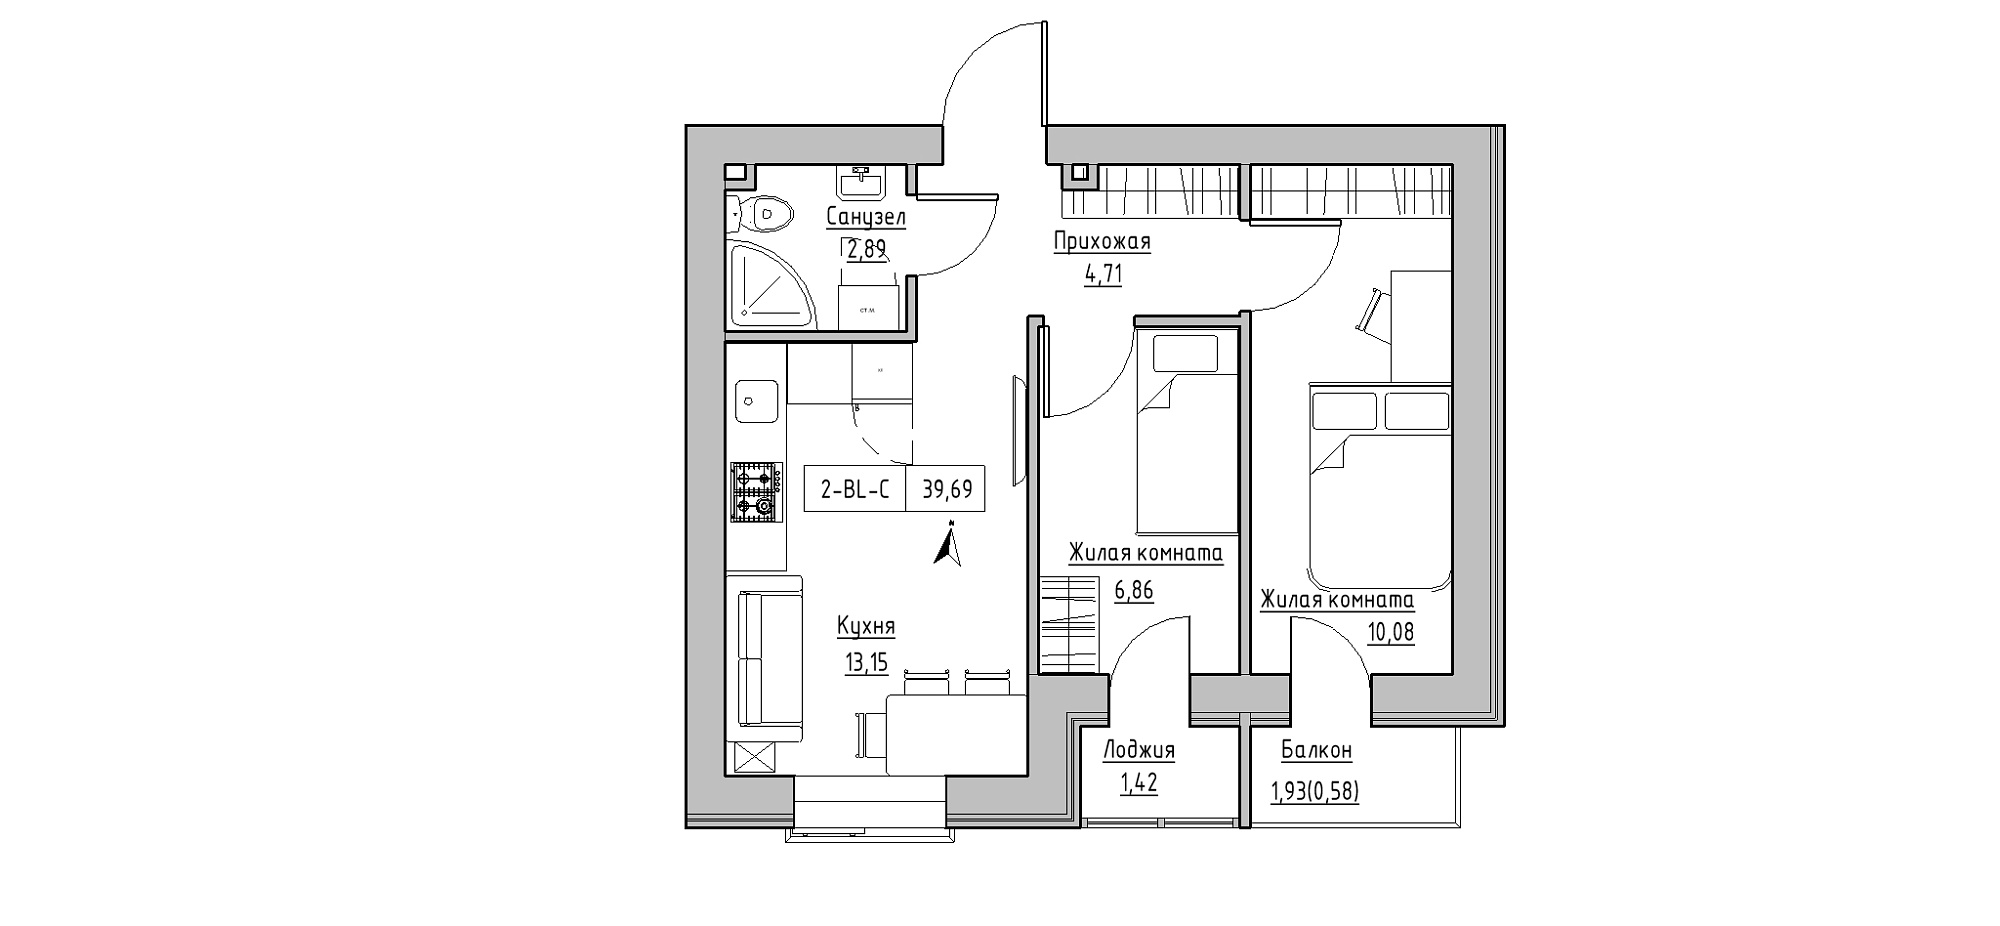 Планування 2-к квартира площею 39.69м2, KS-020-03/0005.